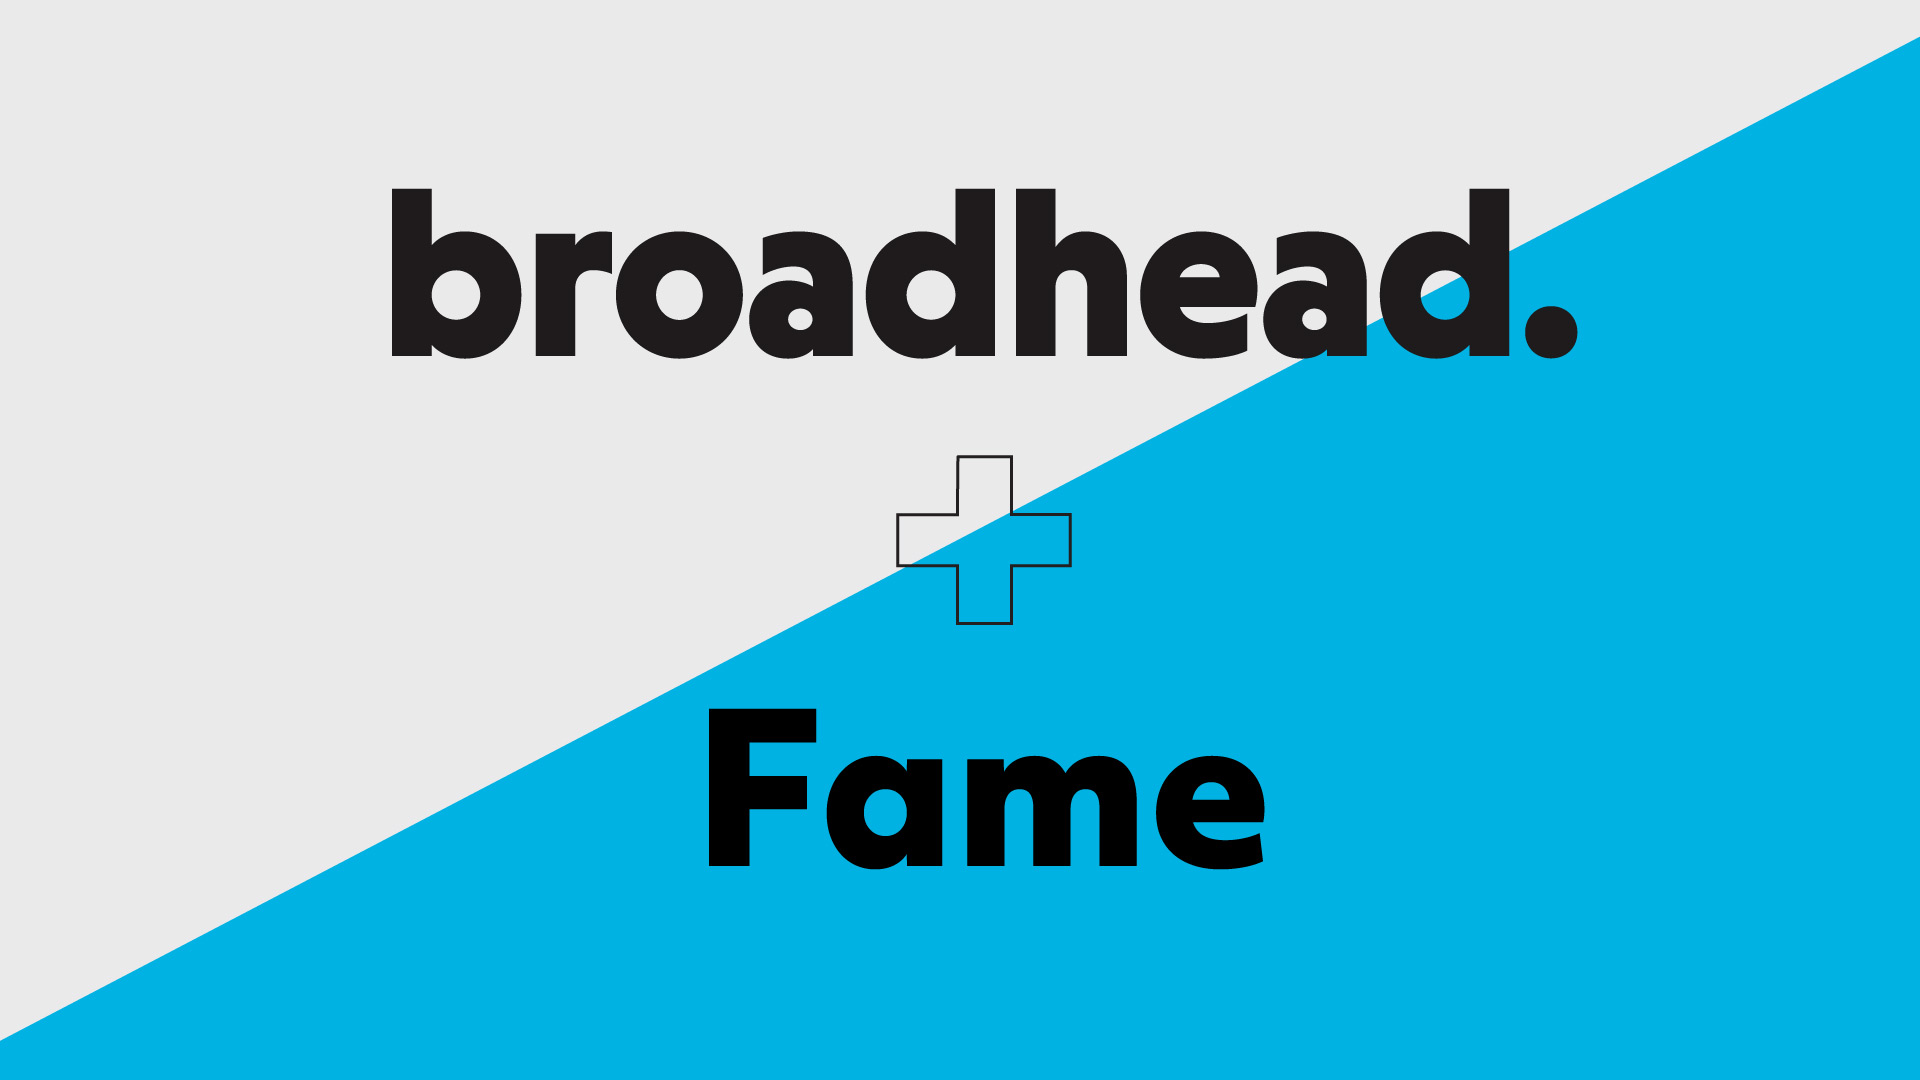 broadhead Fame